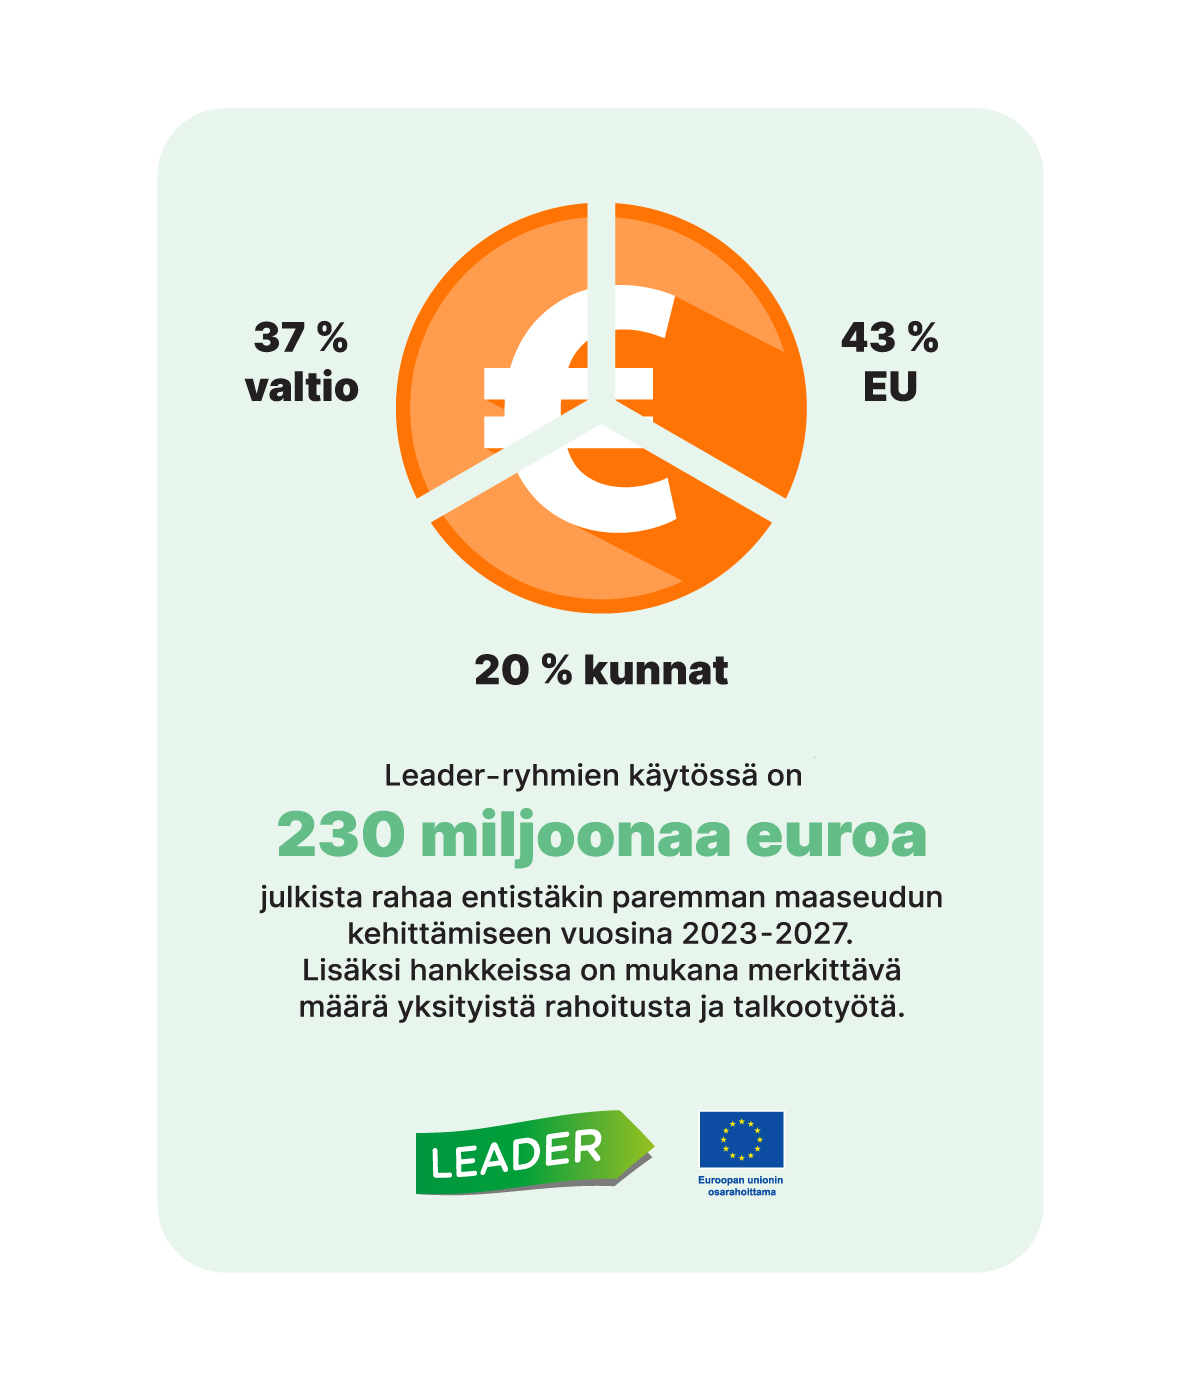 37 % valtio, 43 % EU ja 20 % kunnat. Leader-ryhmien käytössä on 230 miljoonaa euroa julkista rahaa entistäkin paremman maaseudun kehittämiseen vuosina 2023-2027. Lisäksi hankkeissa on mukana merkittävä määrä yksityistä rahoitusta ja talkootyötä. Piirroskuva.